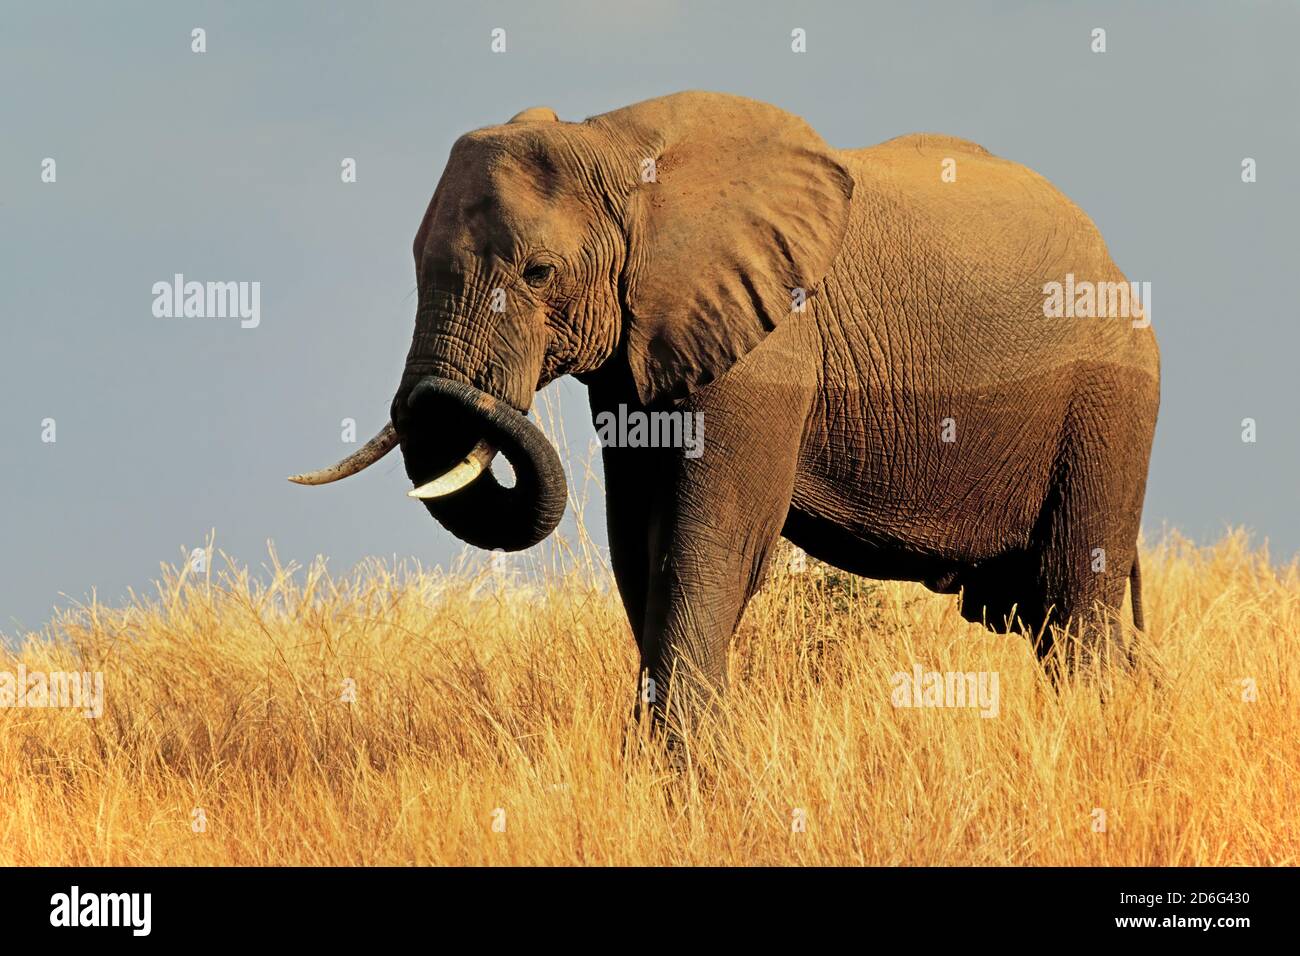 Large African bull elephant (Loxodonta africana) in grassland, Matusadona National Park, Zimbabwe Stock Photo